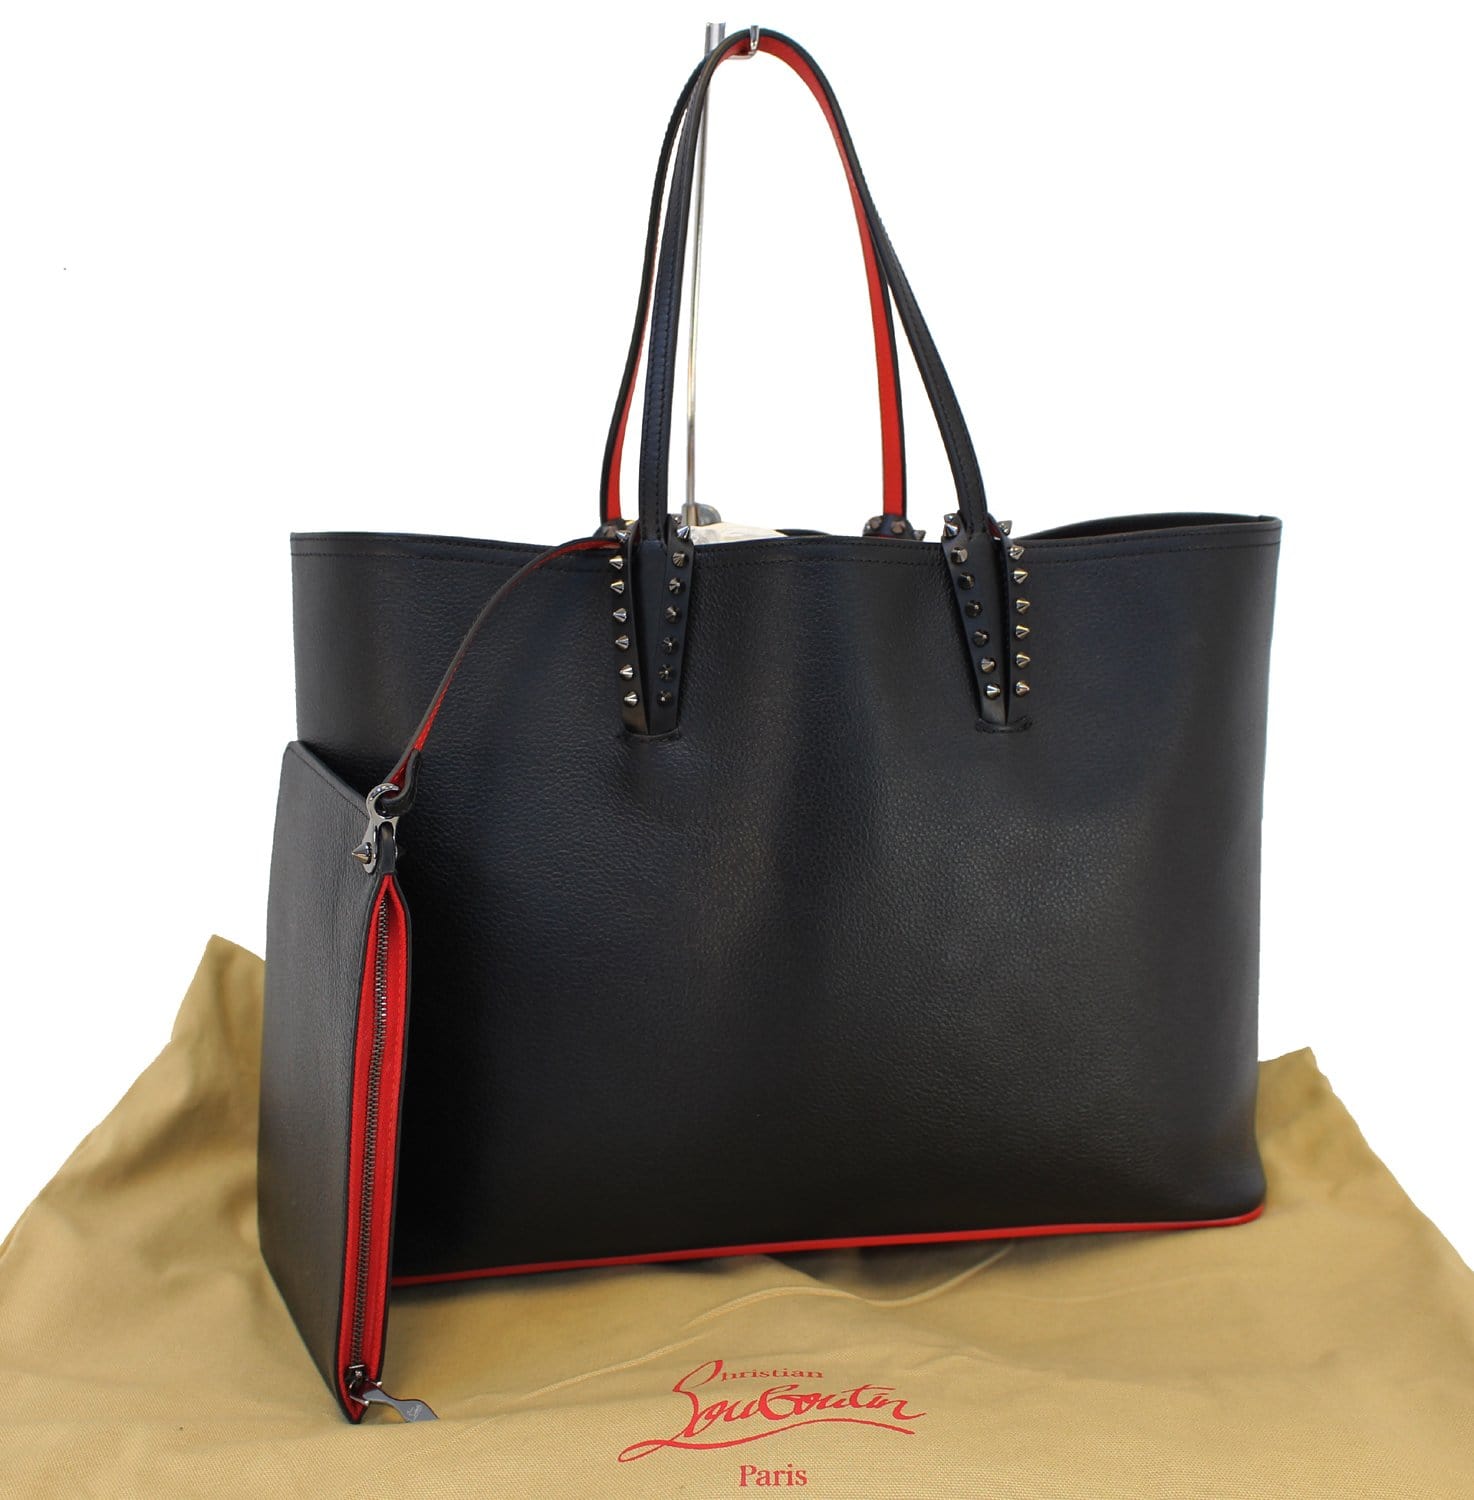 Christian Louboutin Kabata Tote Bag Black 1205187 Leather Studded